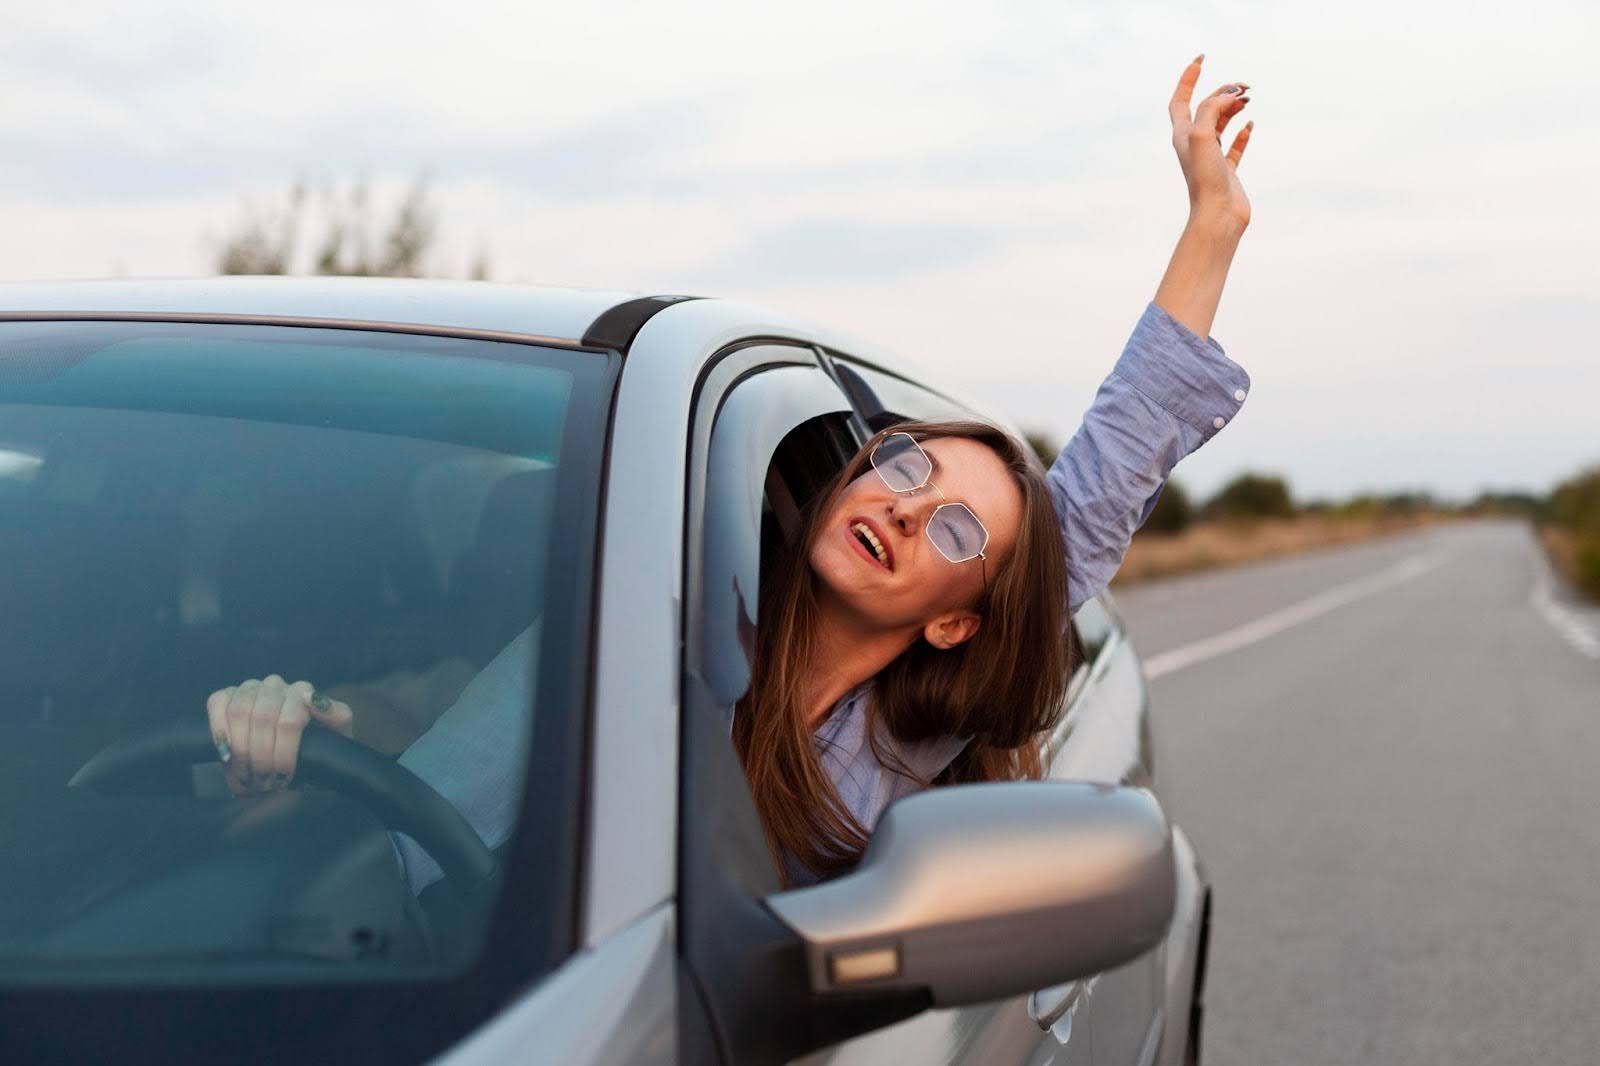 Na imagem, uma mulher de óculos escuros dirige pela estrada em um veículo cinza, contente com os benefícios do sistema de arrefecimento.